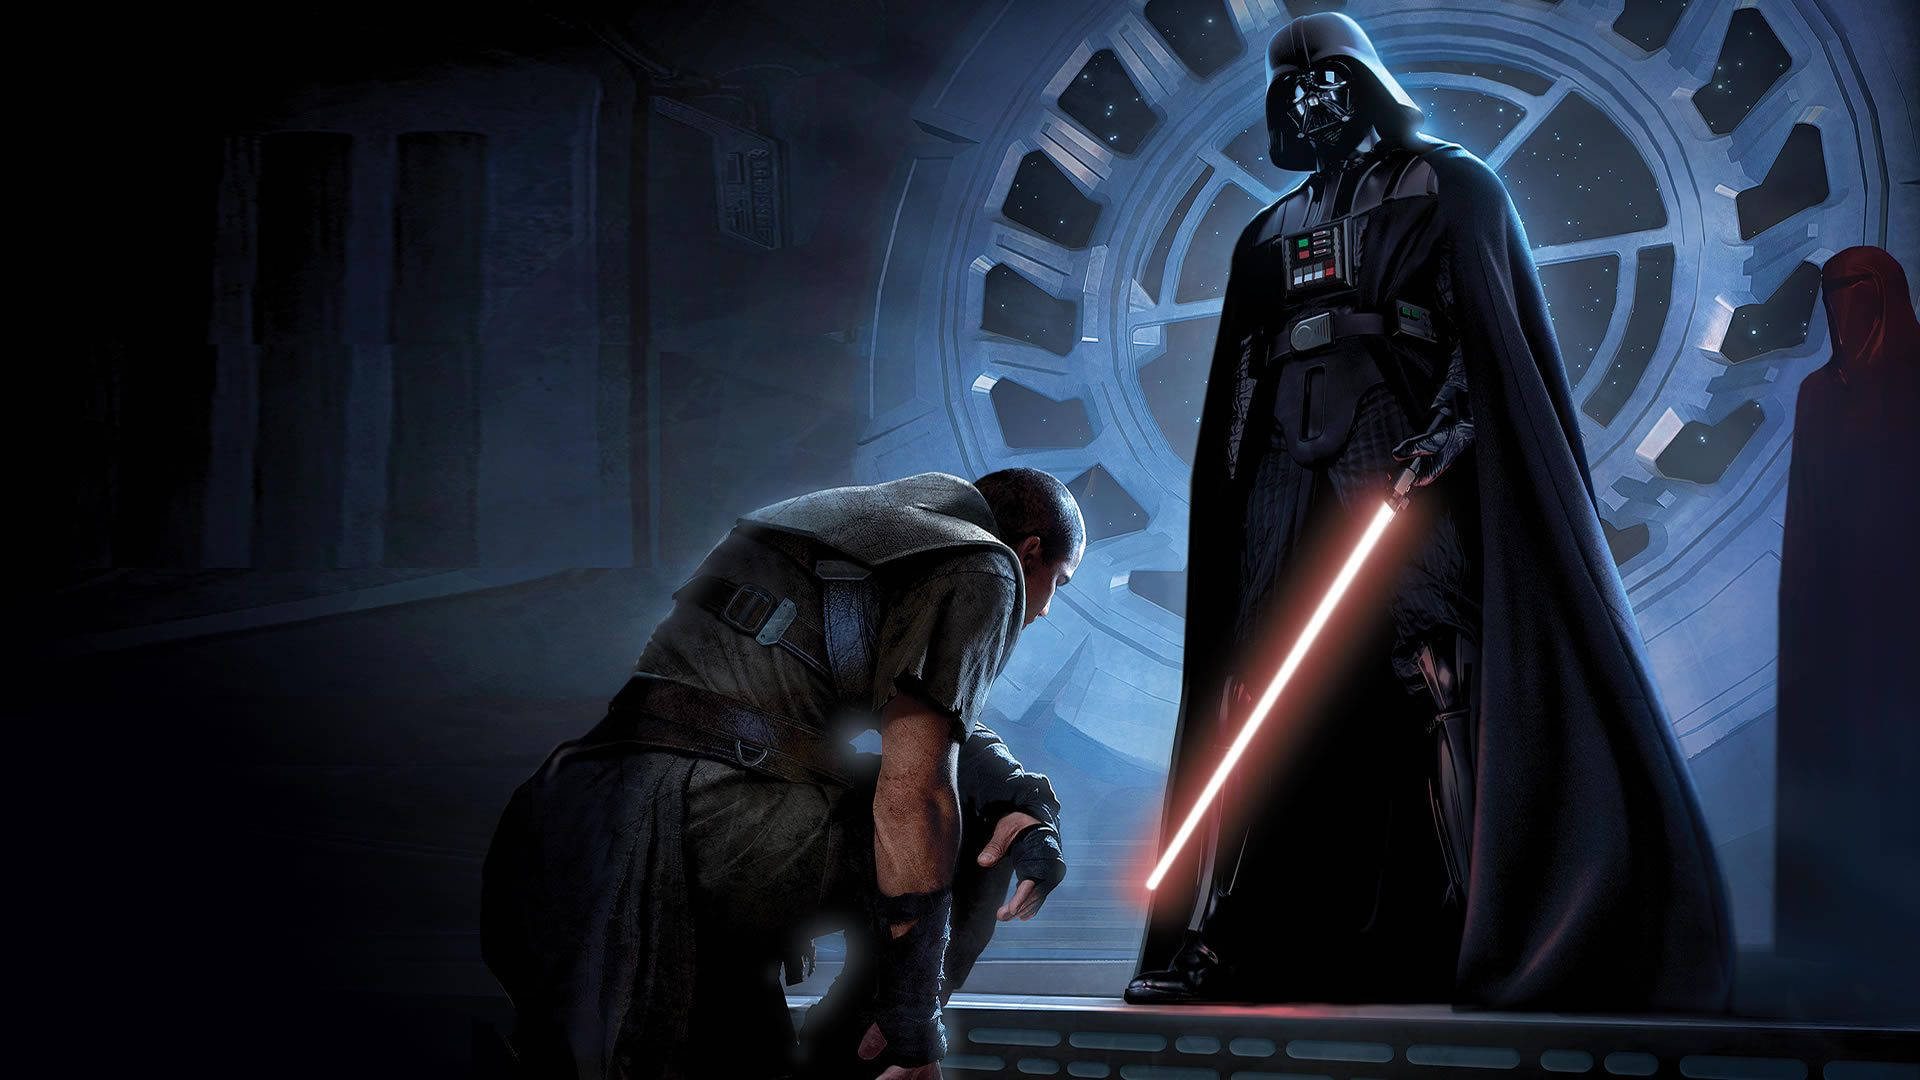 Darth Vader Star Wars Wallpaper